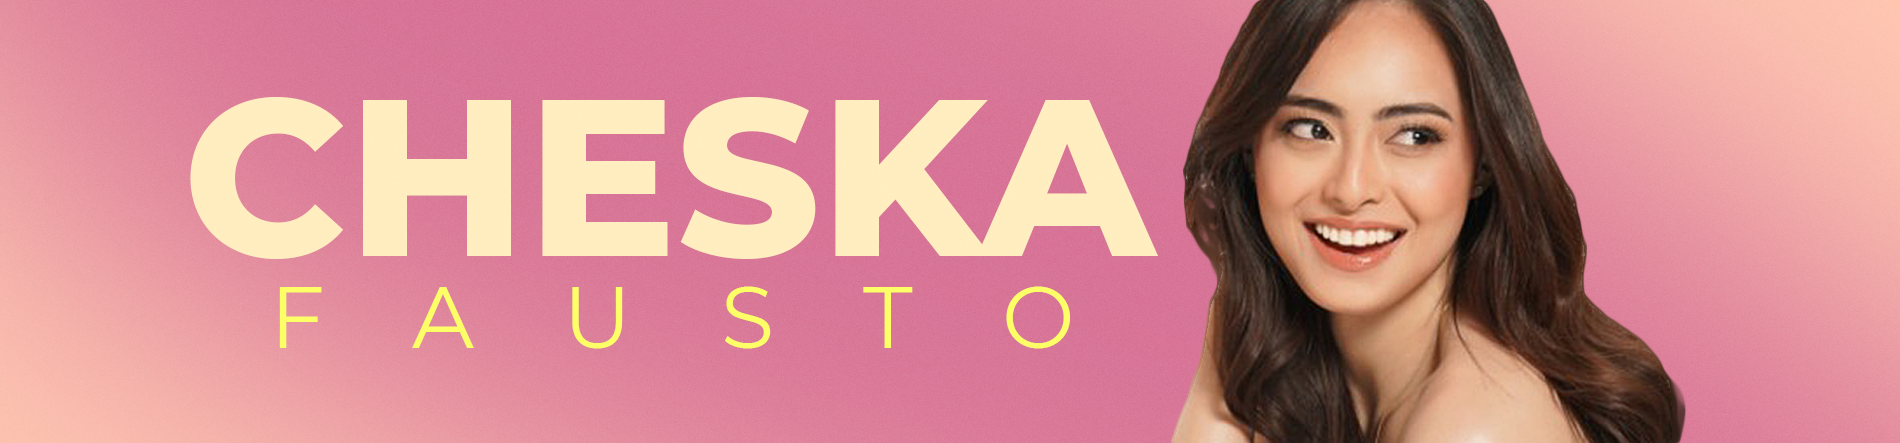 Cheska Fausto Desktop Banner